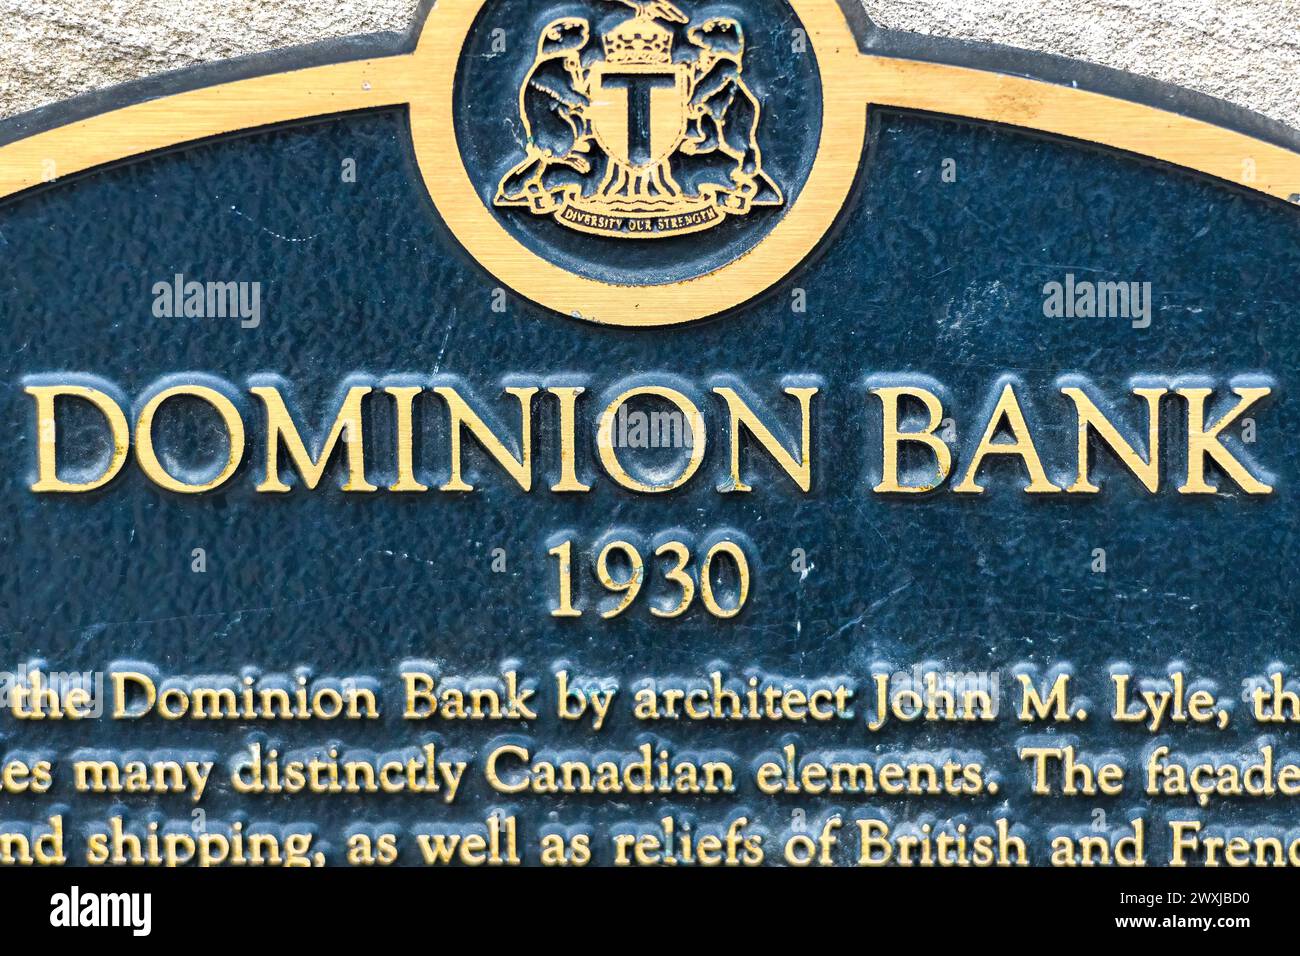 Gedenktafel mit Informationstext über das Gebäude der Dominion Bank 1930, Toronto, Kanada Stockfoto